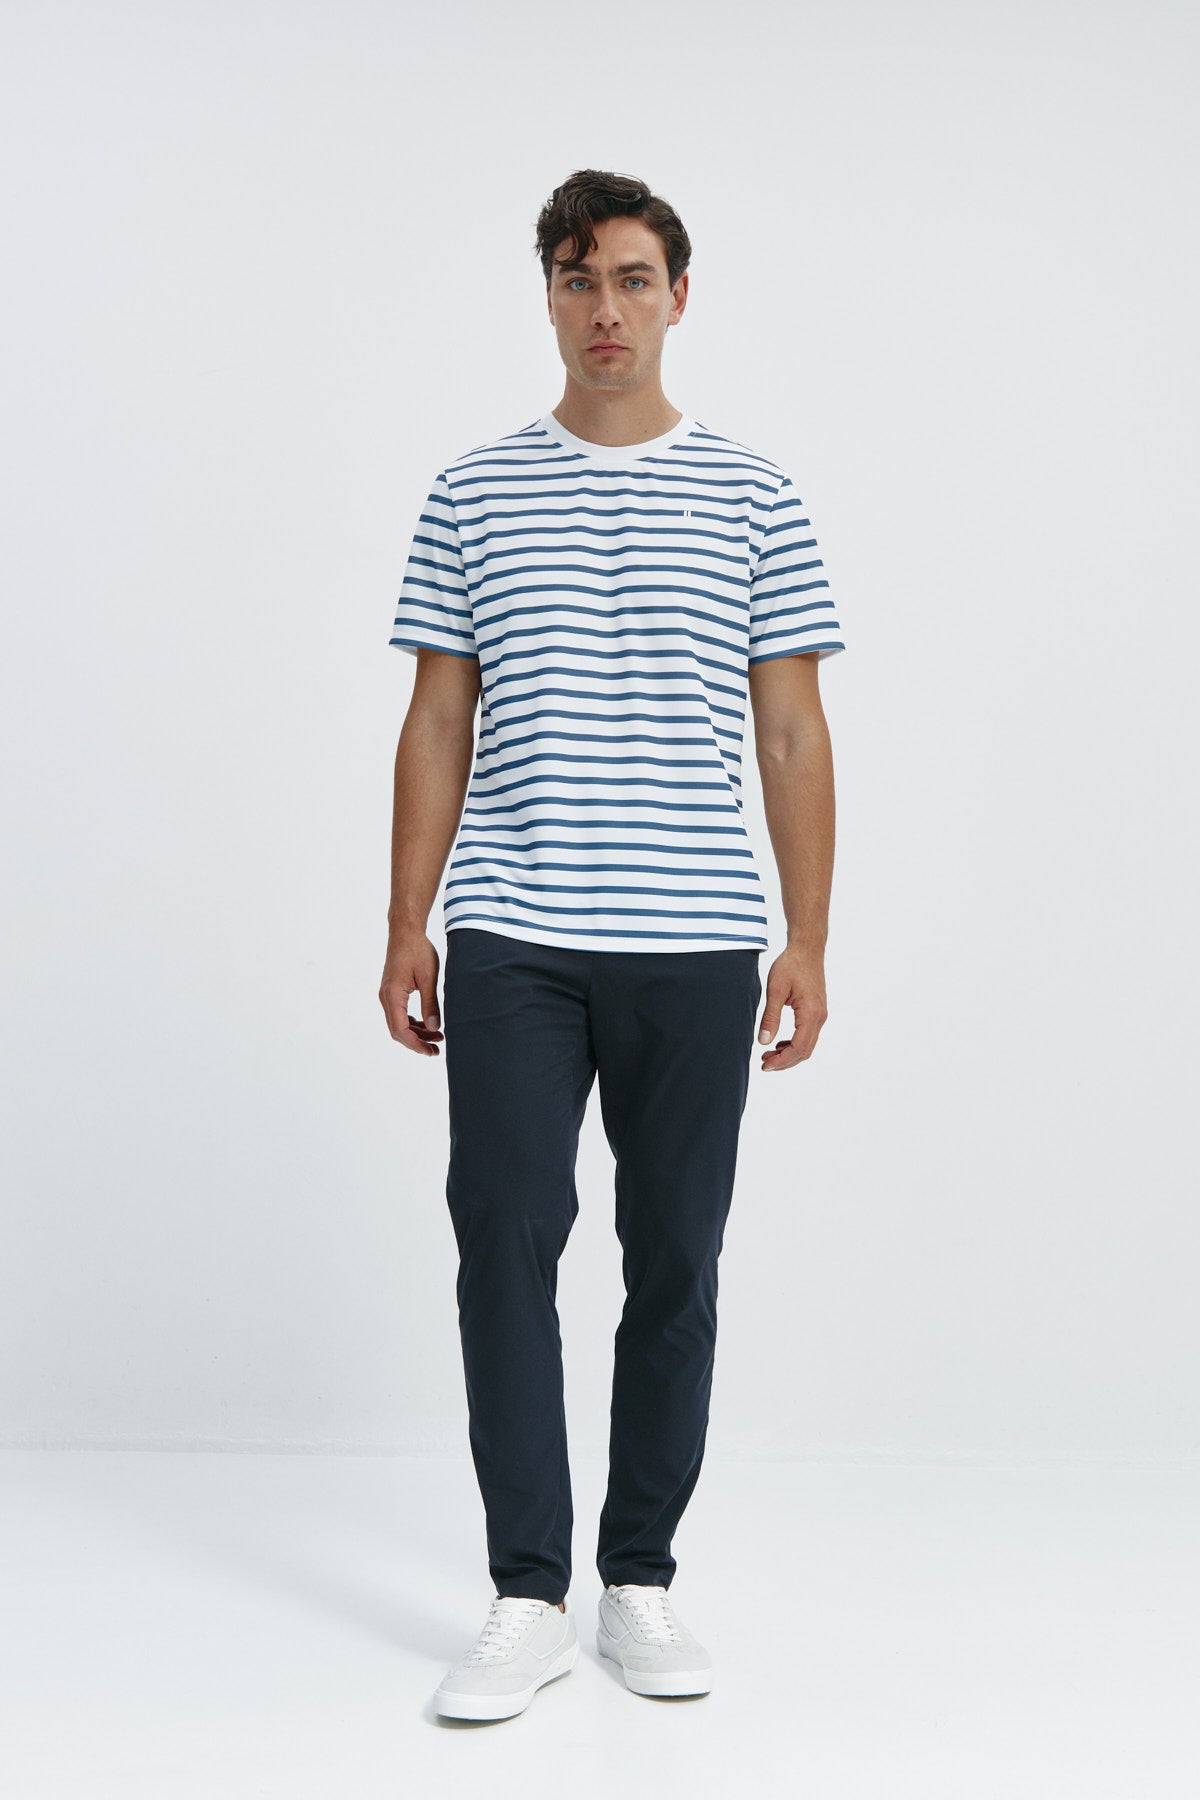 Camiseta de hombre con rayas marino de Sepiia, estilo y versatilidad en una prenda resistente. Foto cuerpo completo